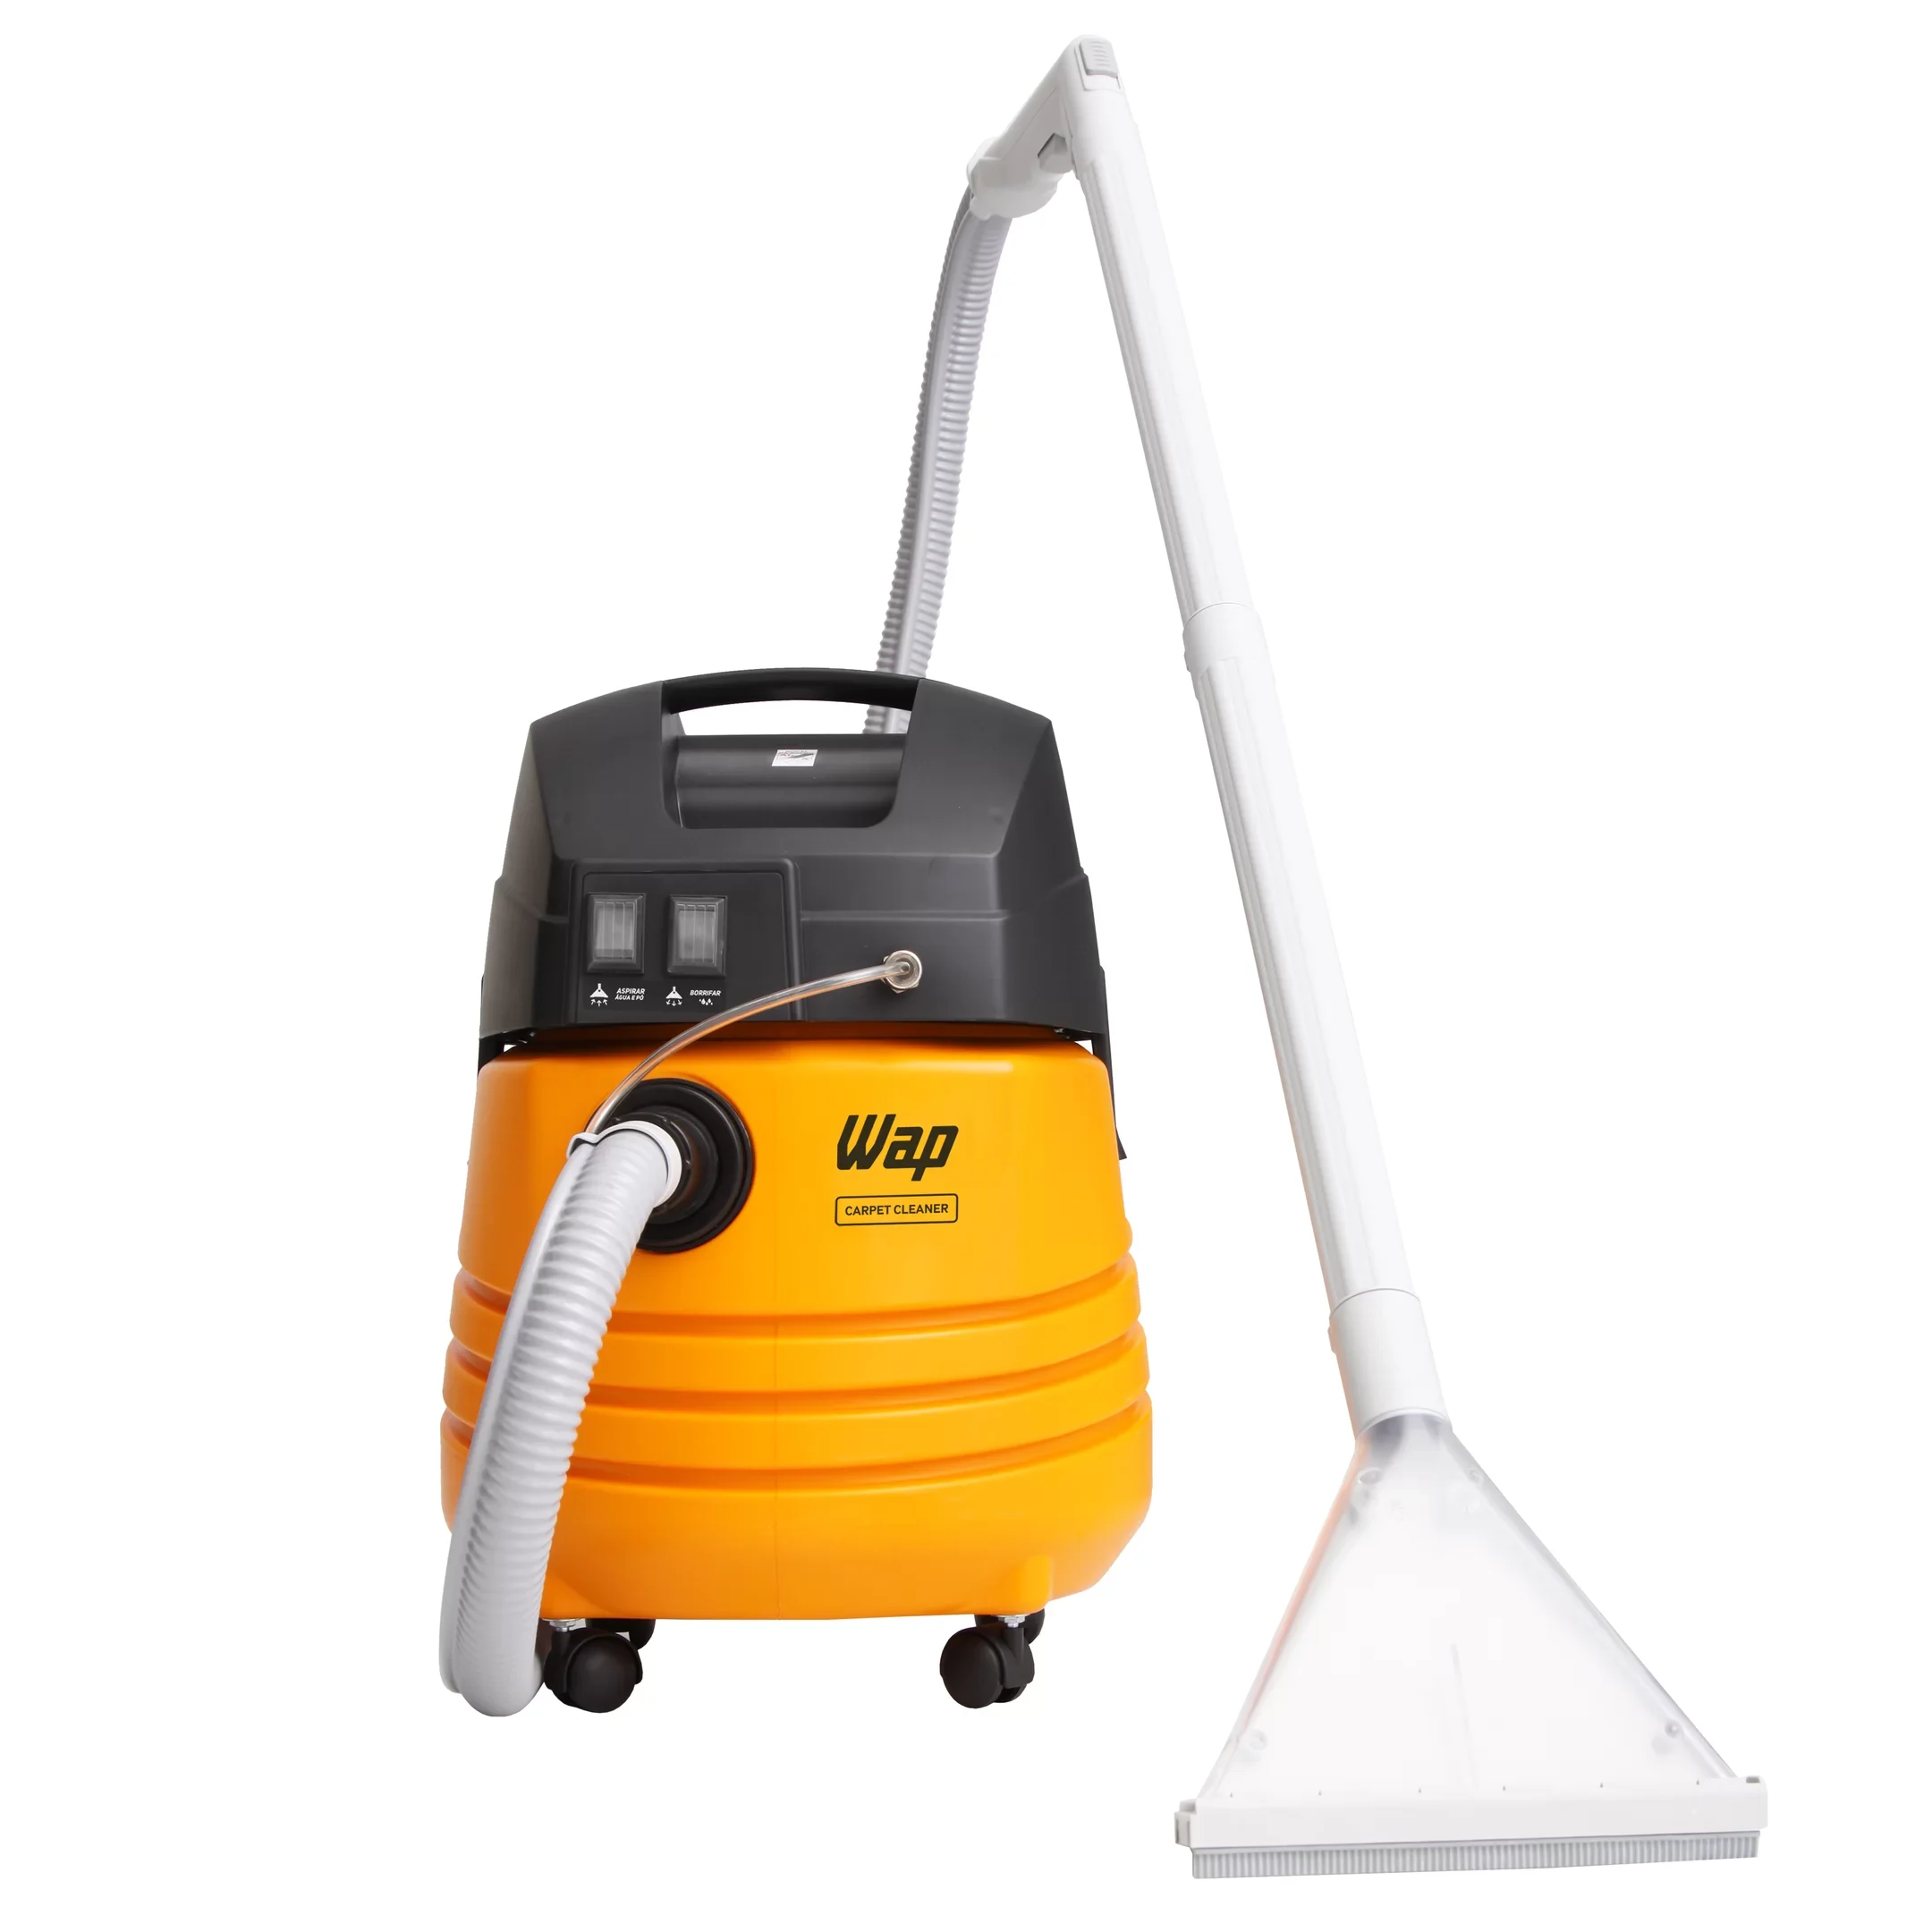 Extratora de Limpeza WAP Carpet Cleaner 1600W Uso Profissional Bocal de Sopro, Borrifa e Aspira 220V Amarelo/Preto - 5